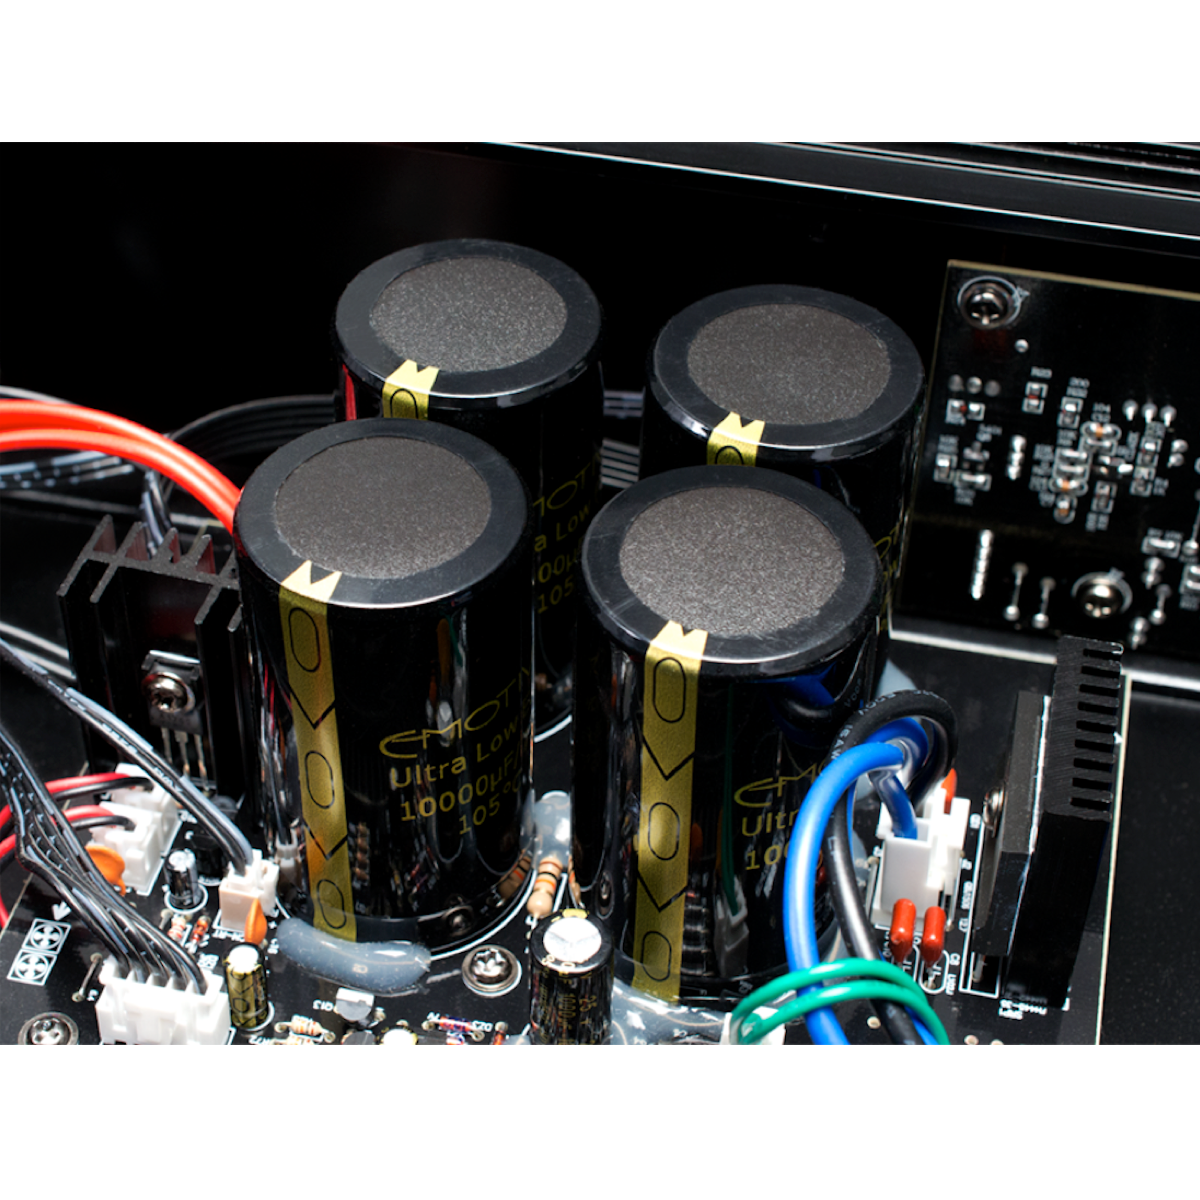 Emotiva A-500 - Five Chanel Power Amplifier - AVStore